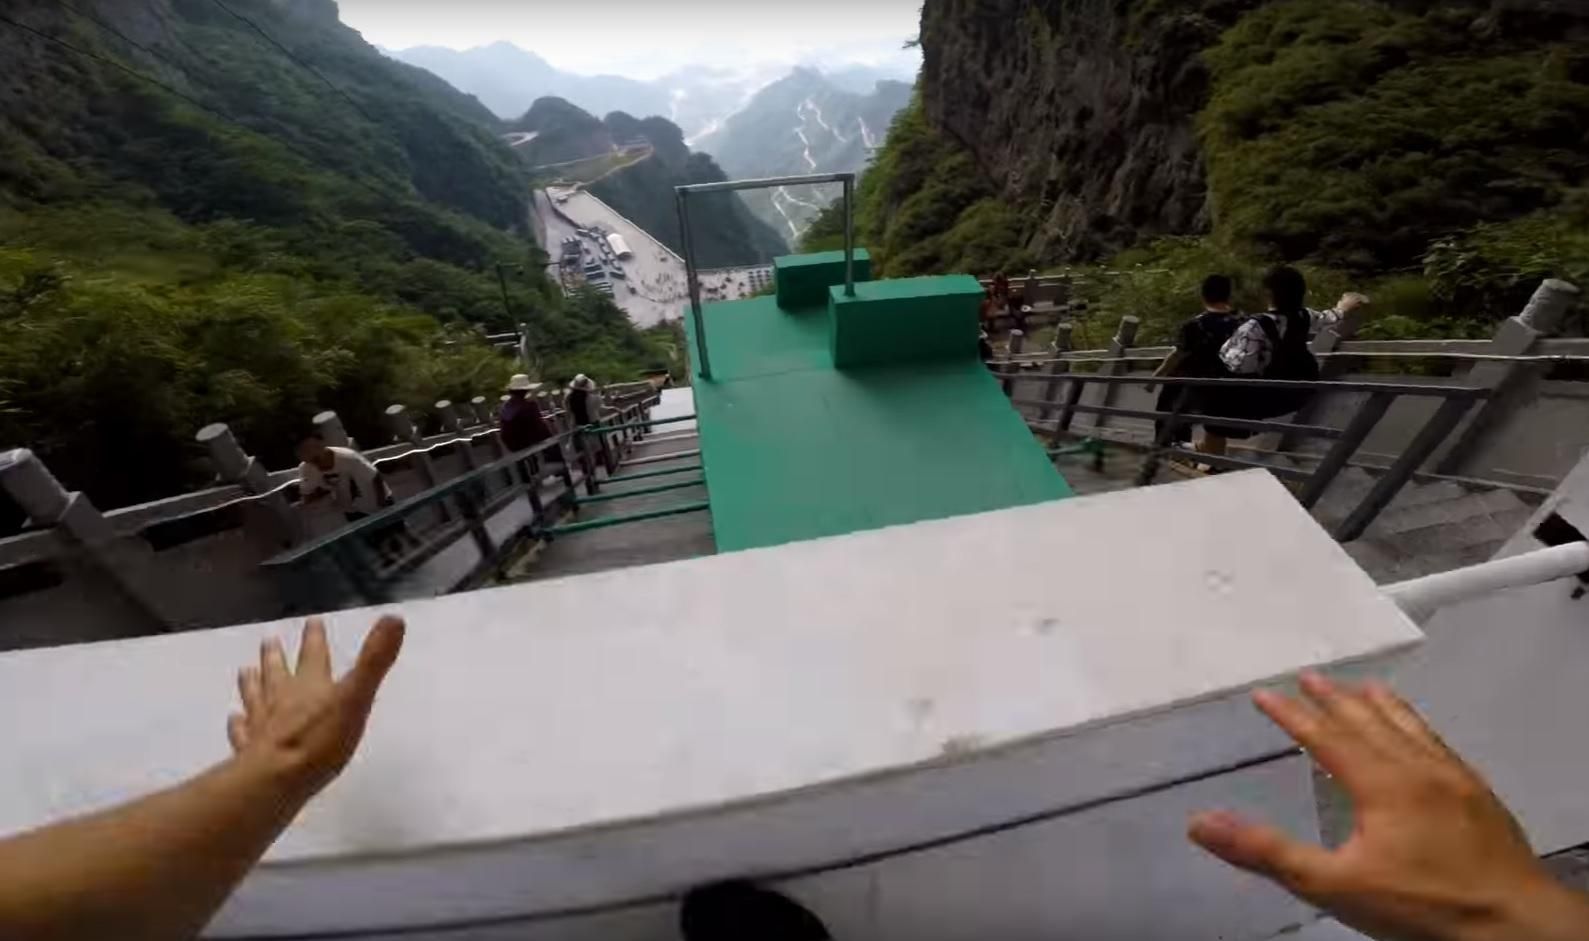 Дивитись страшно: в Китаї установили 300-метрову трасу для паркуру просто в горах